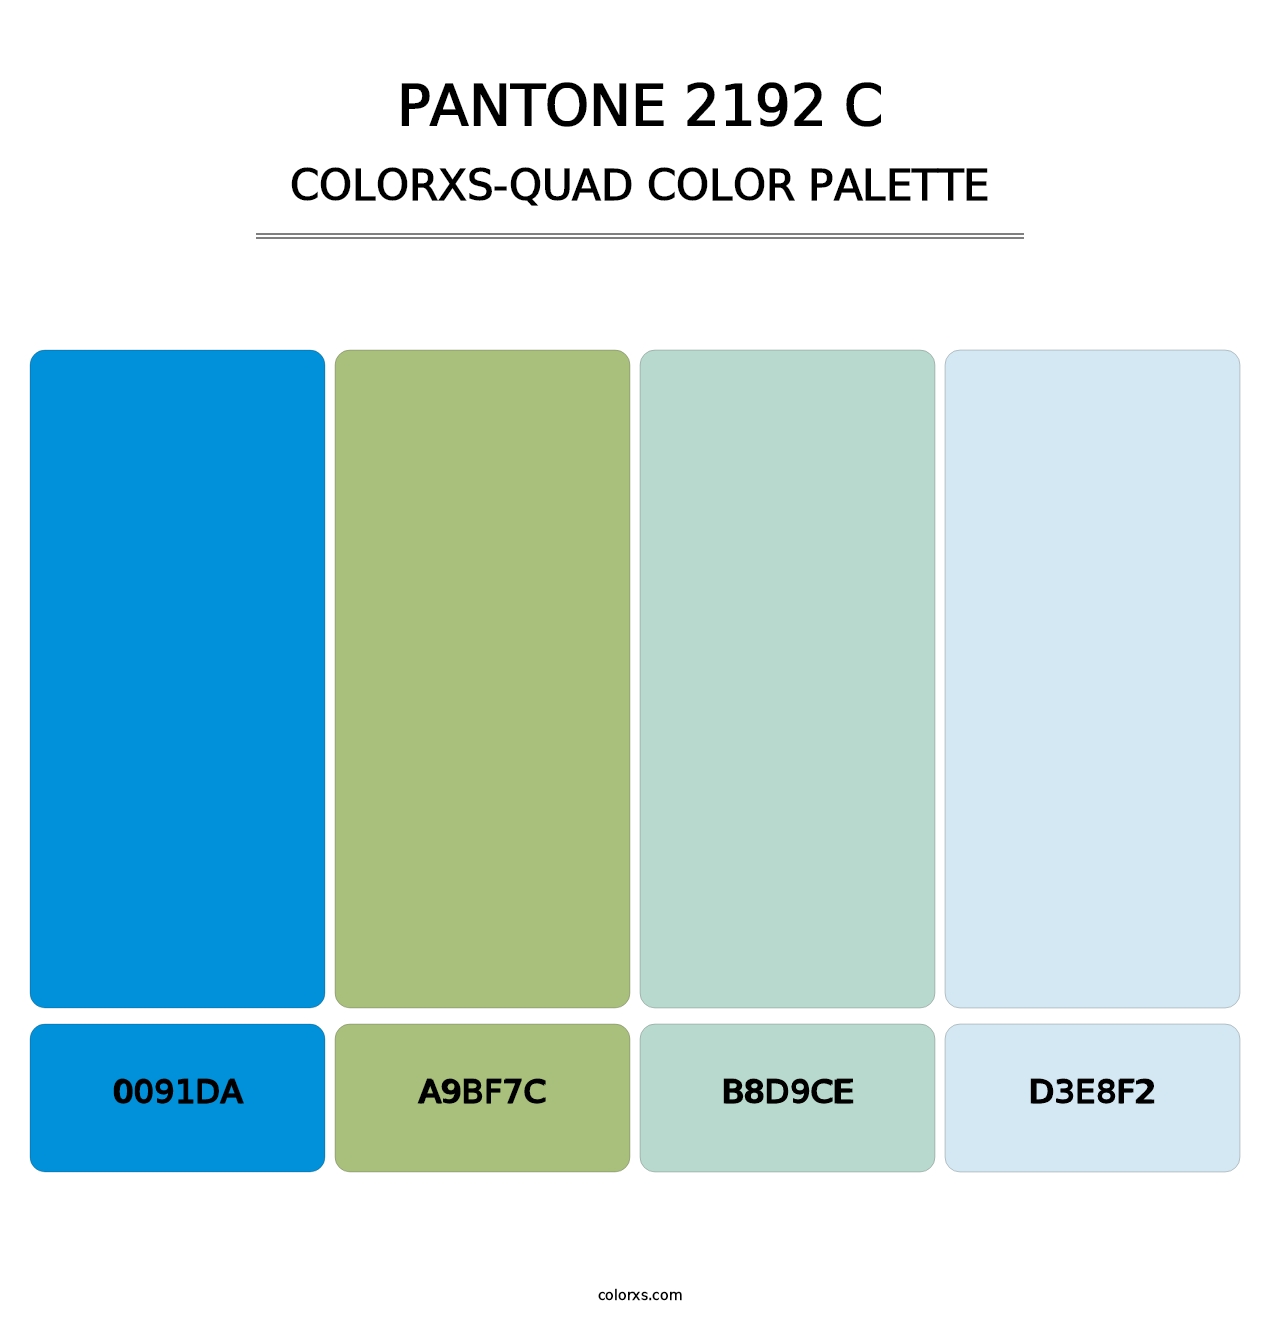 PANTONE 2192 C - Colorxs Quad Palette